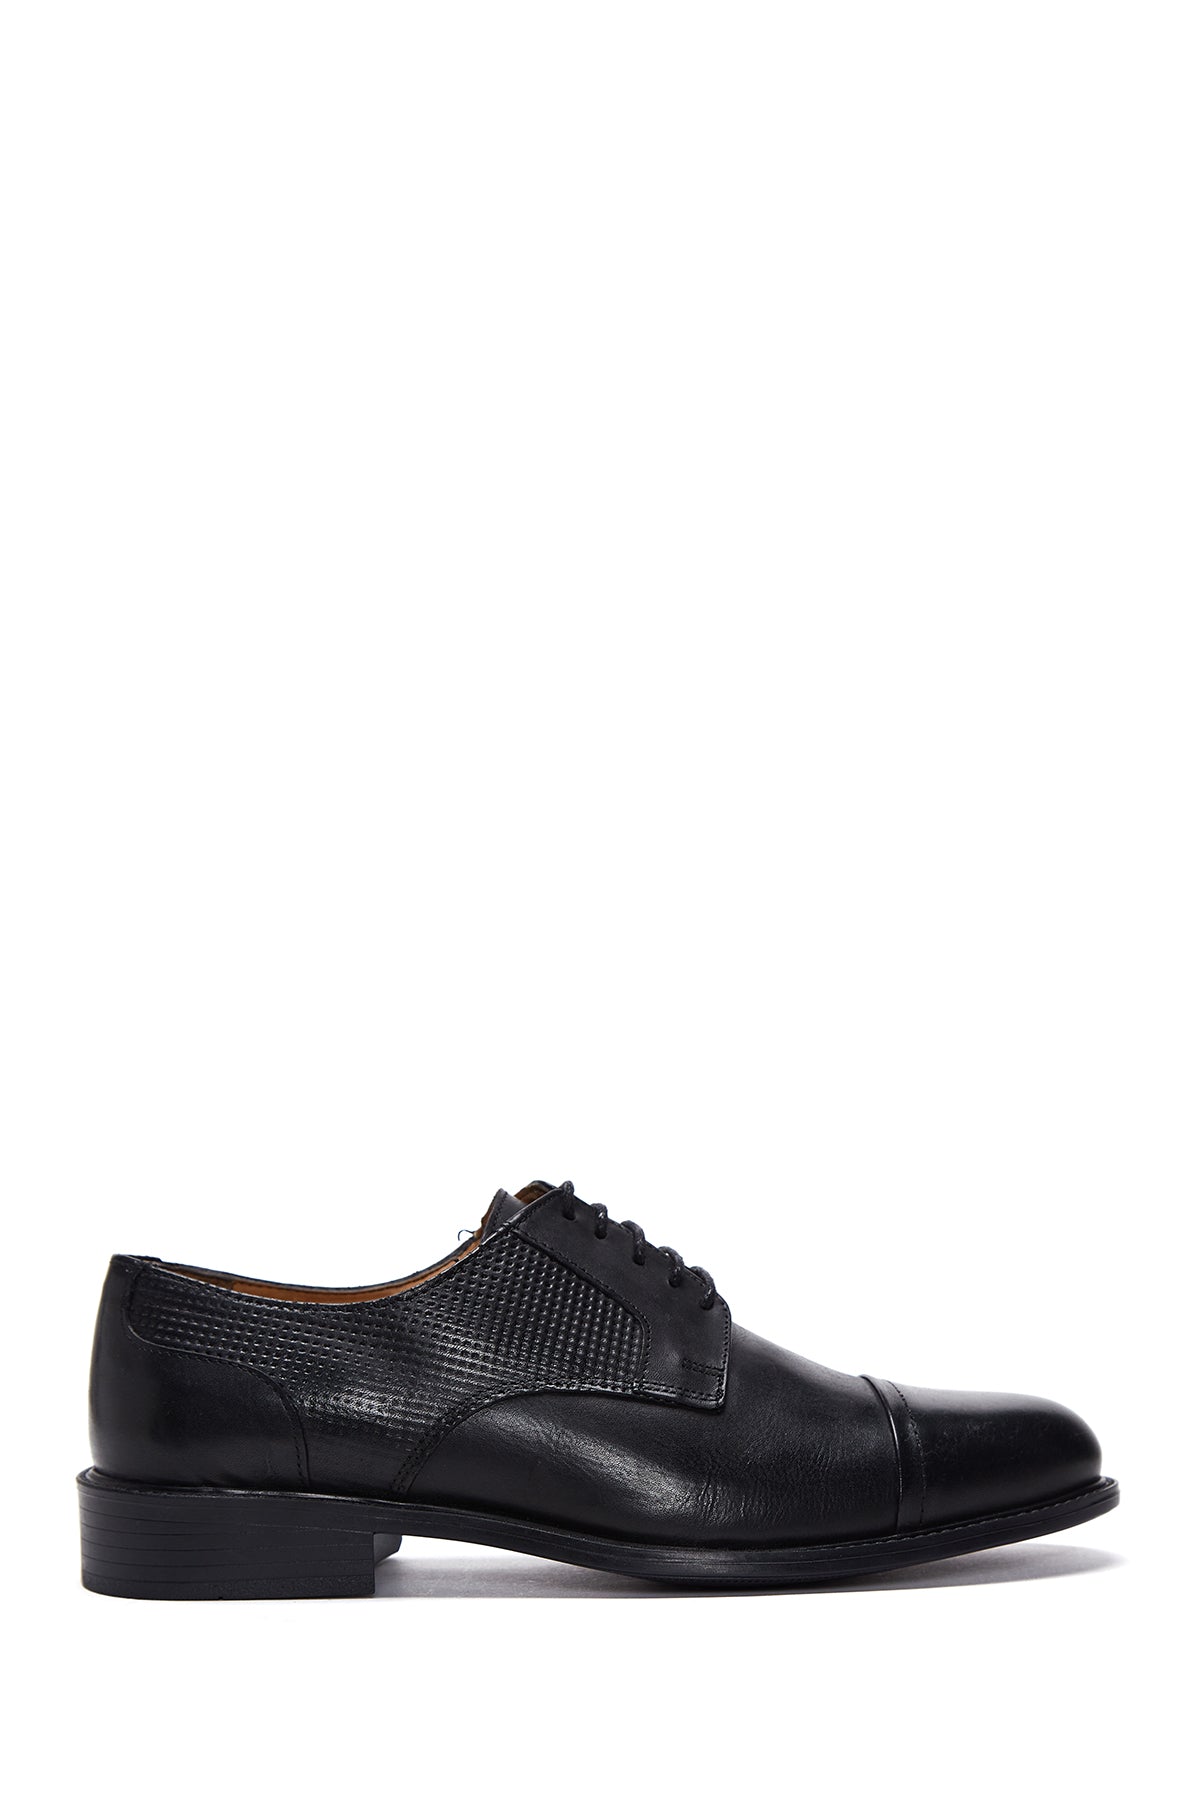 Erkek Siyah Deri Desenli Klasik Ayakkabı